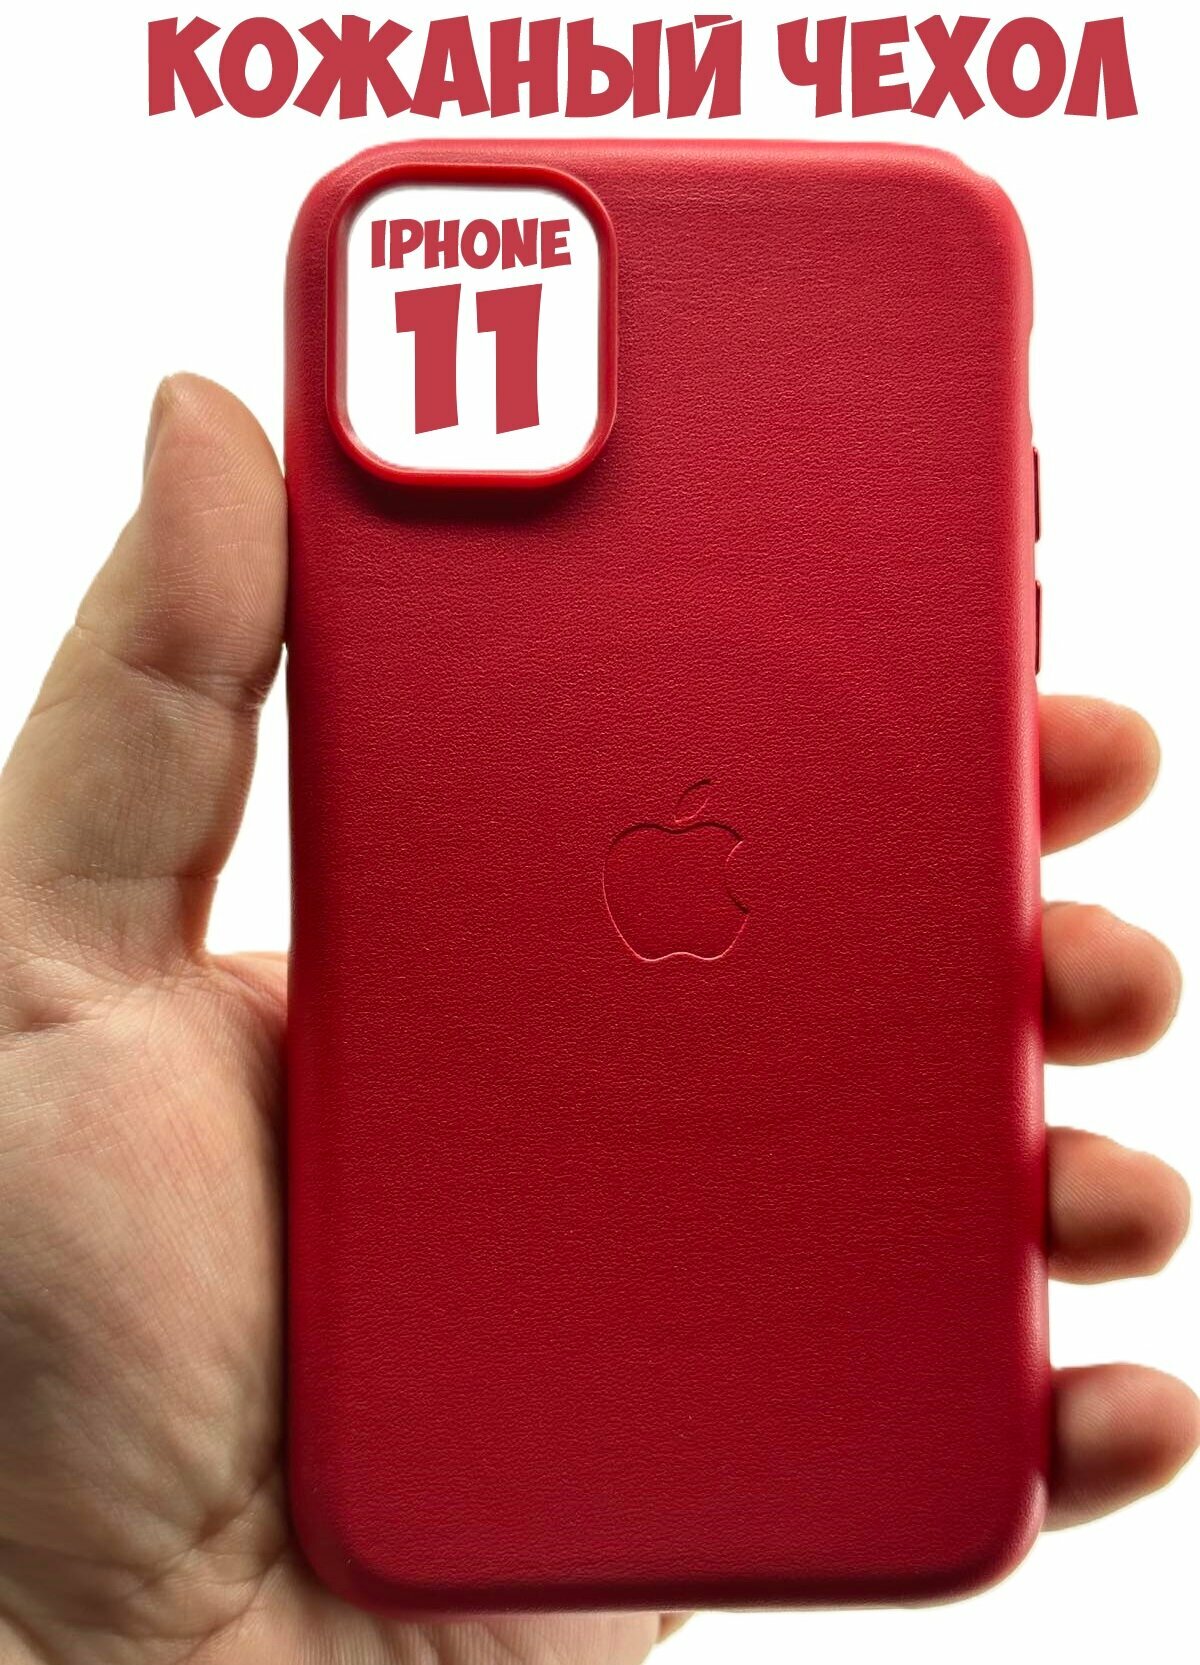 Кожаный чехол с Magsafe для iPhone 11, красный цвет, RED